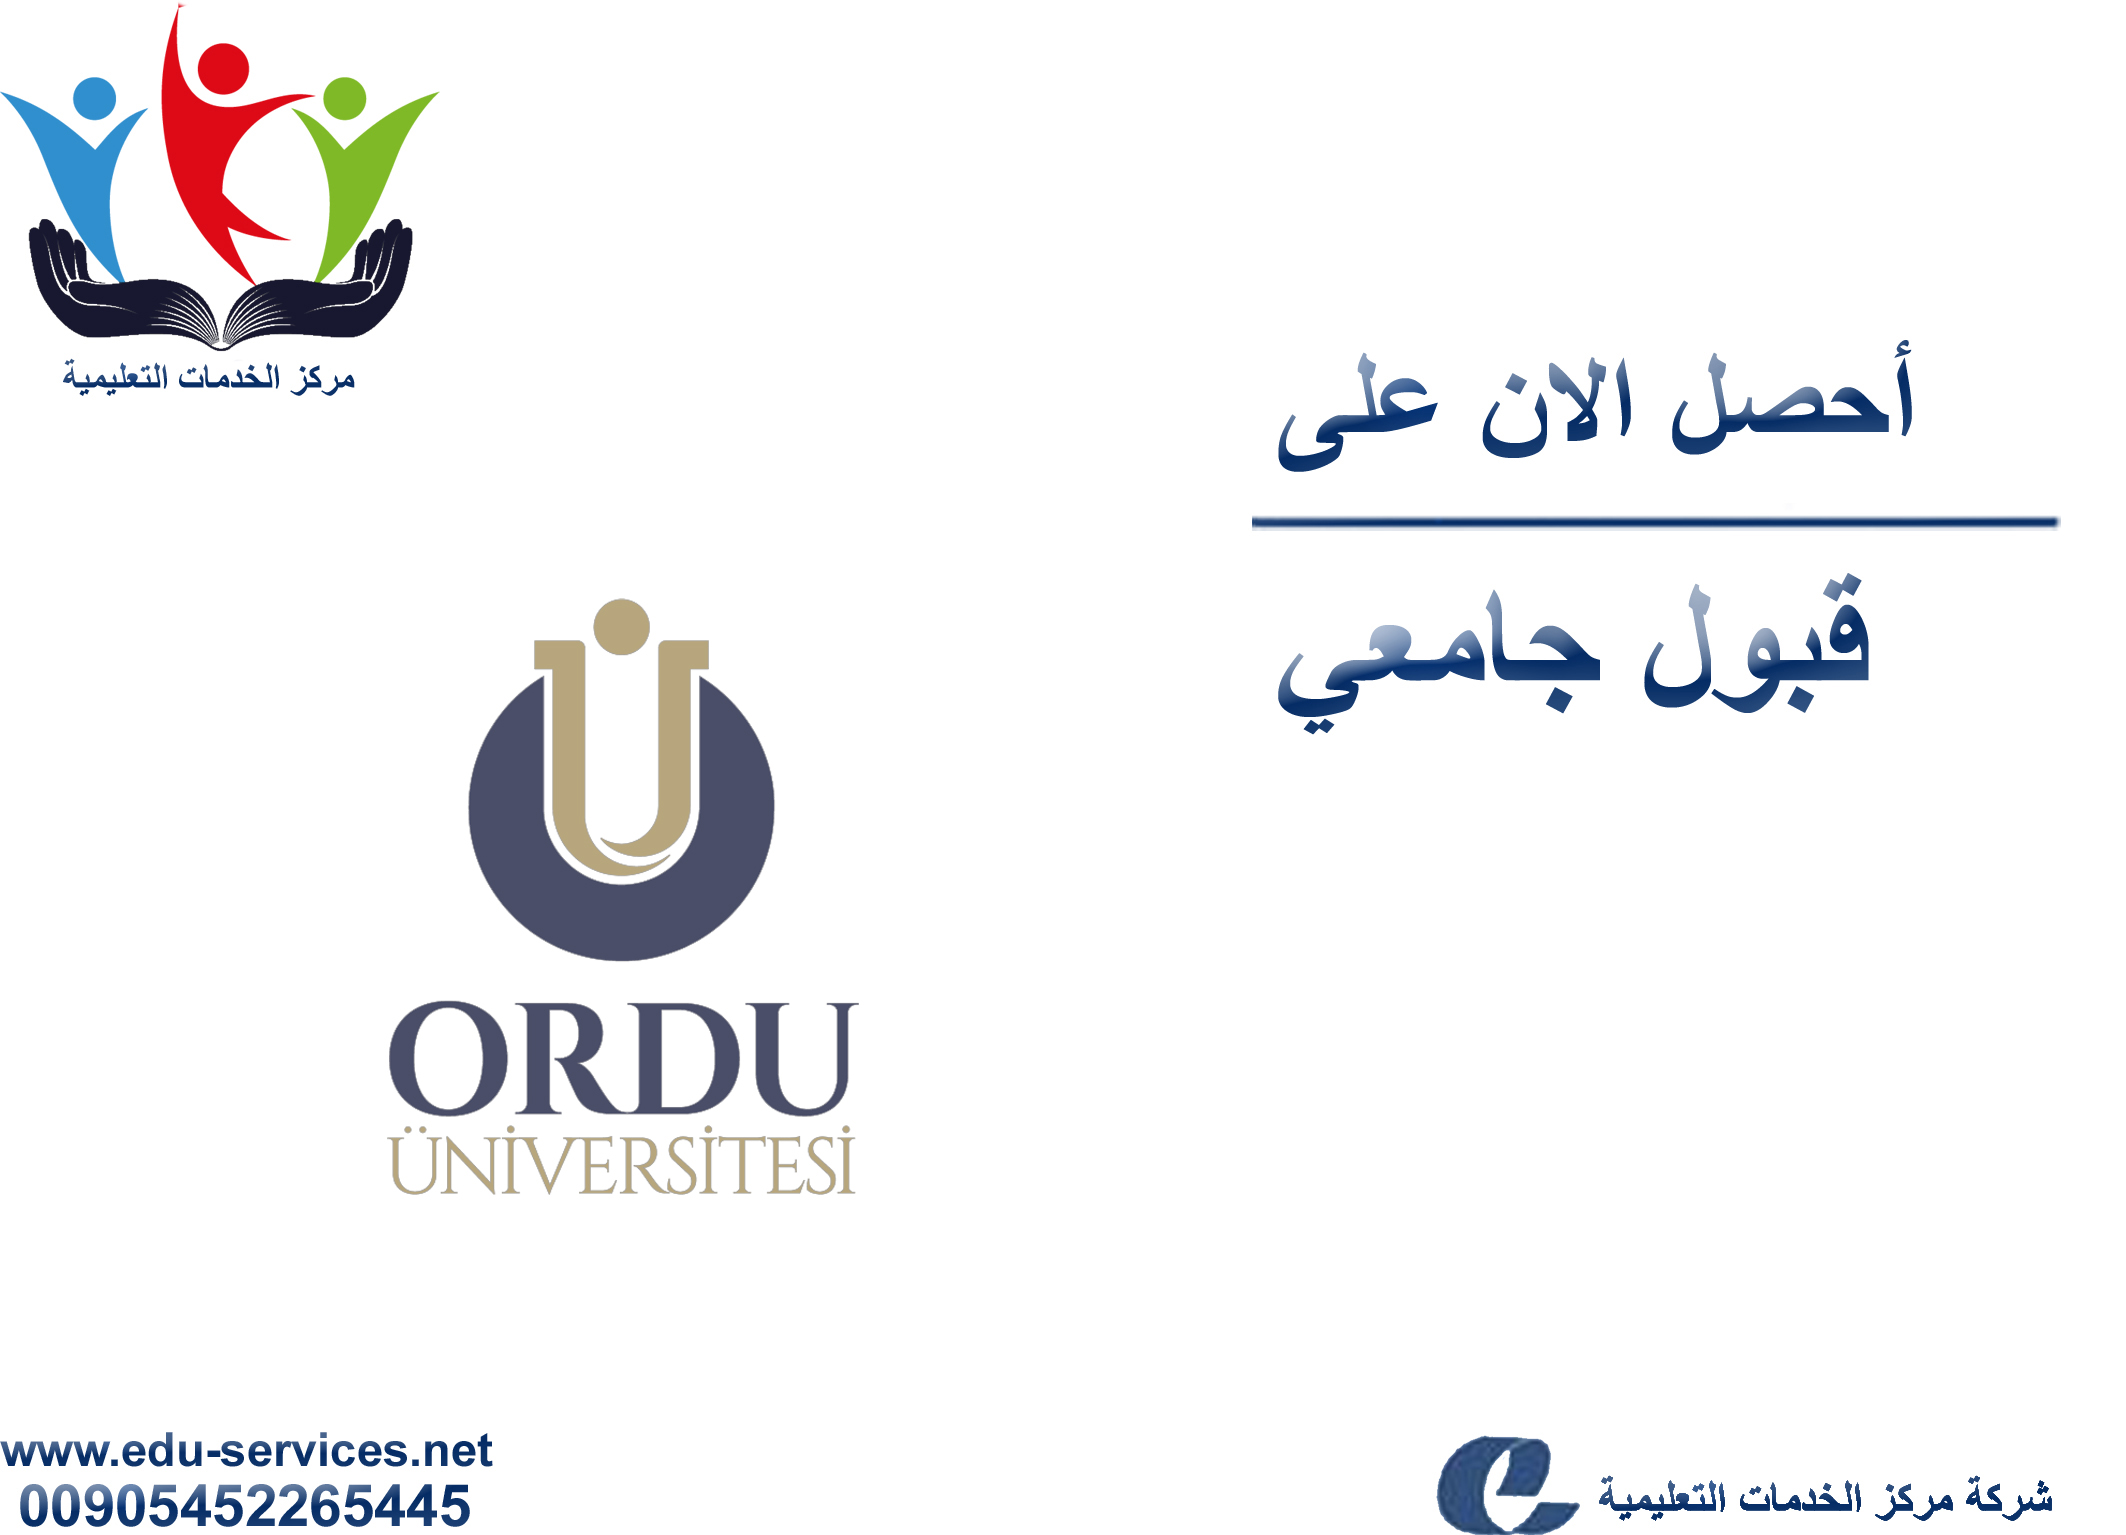 افتتاح التسجيل في جامعة اوردو للعام 2019-2020